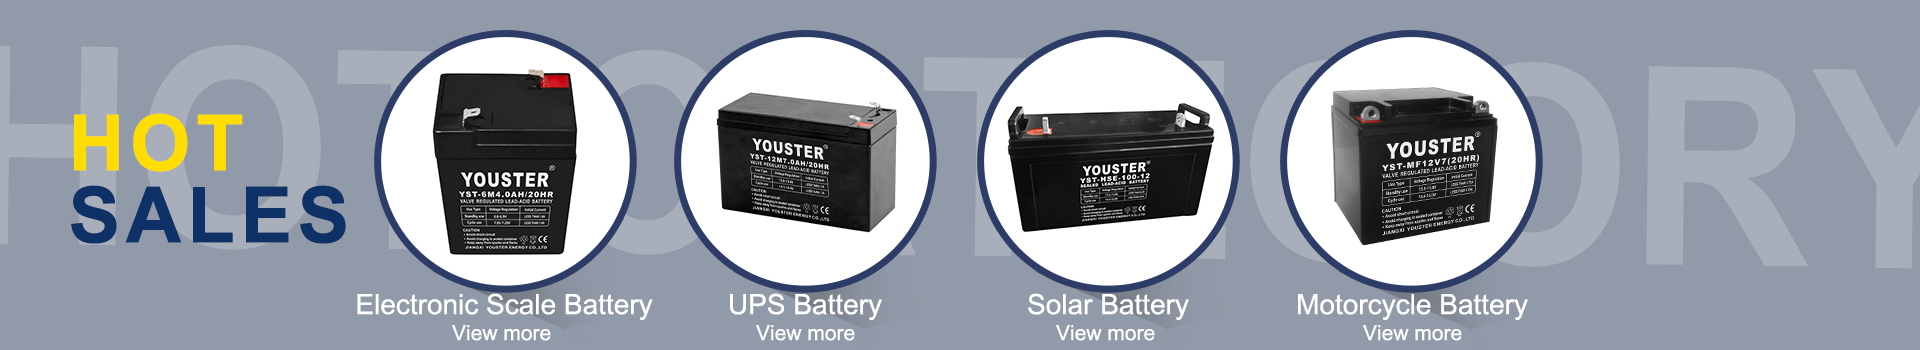 Prezzo di fabbrica 12V100AH Inverter Battery Pack di stoccaggio ricaricabile batterie al piombo